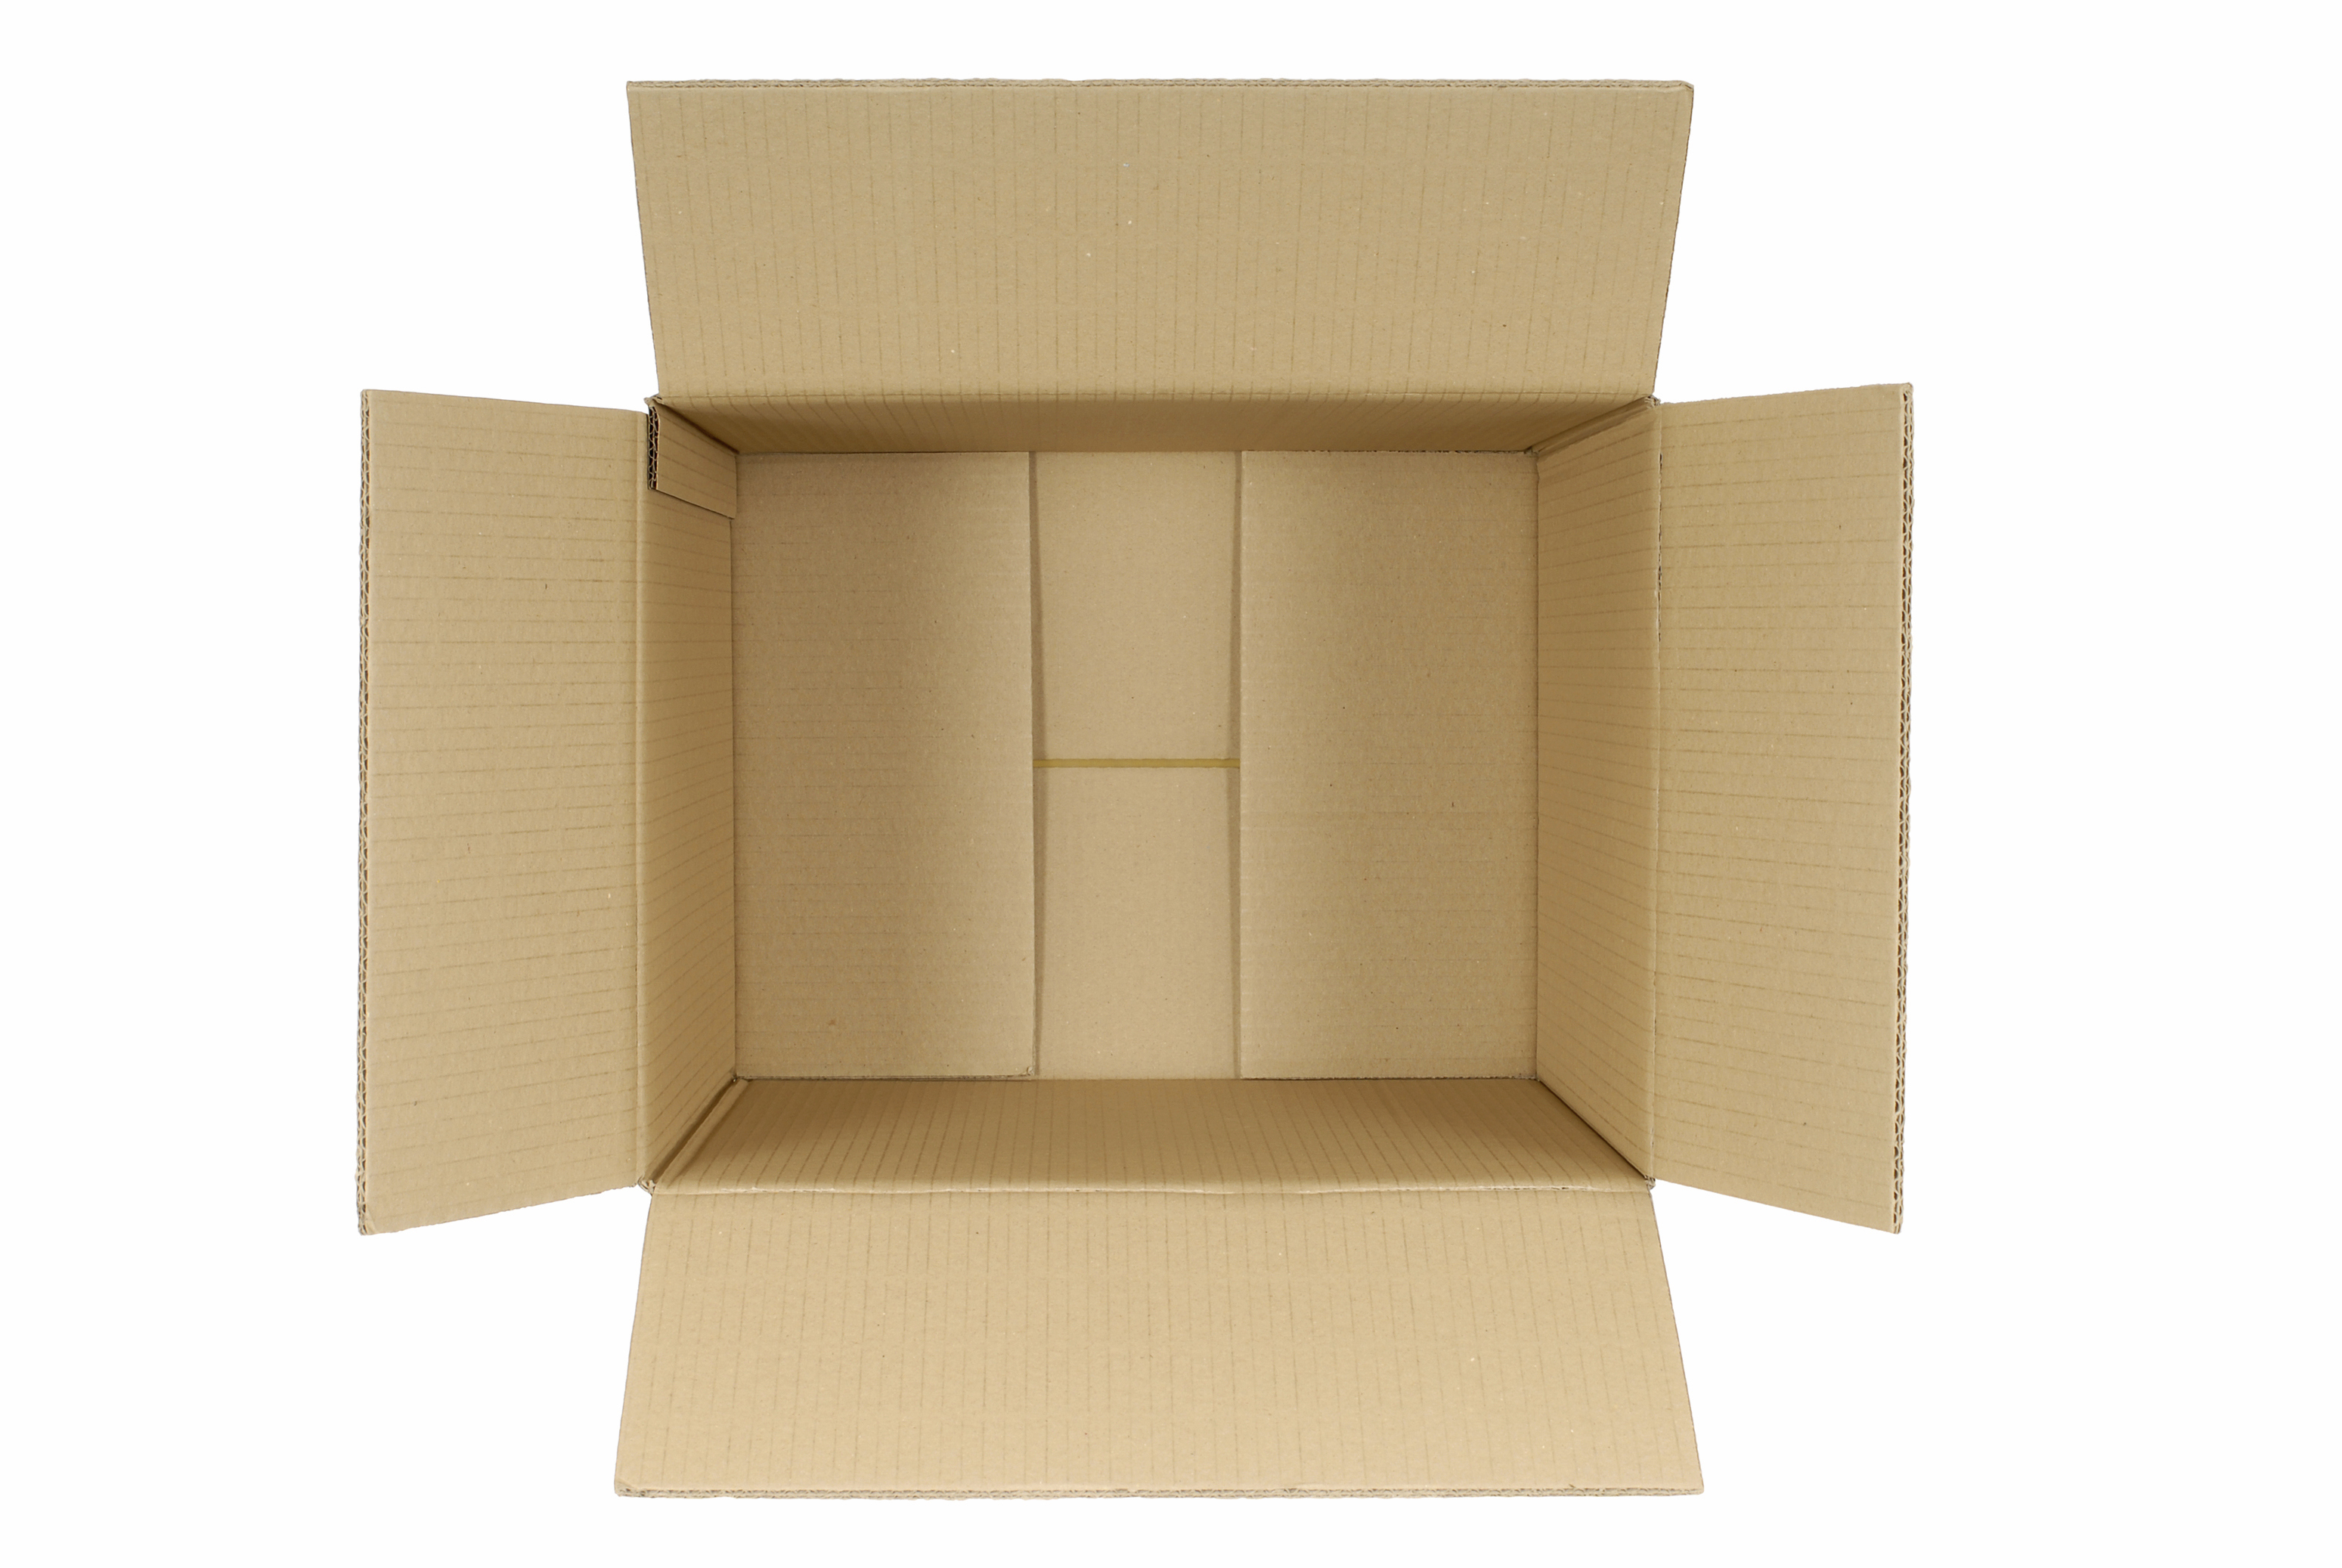 Коробка вид сверху. Картонная коробка вид сверху. Пустая коробка. Внутри коробки.